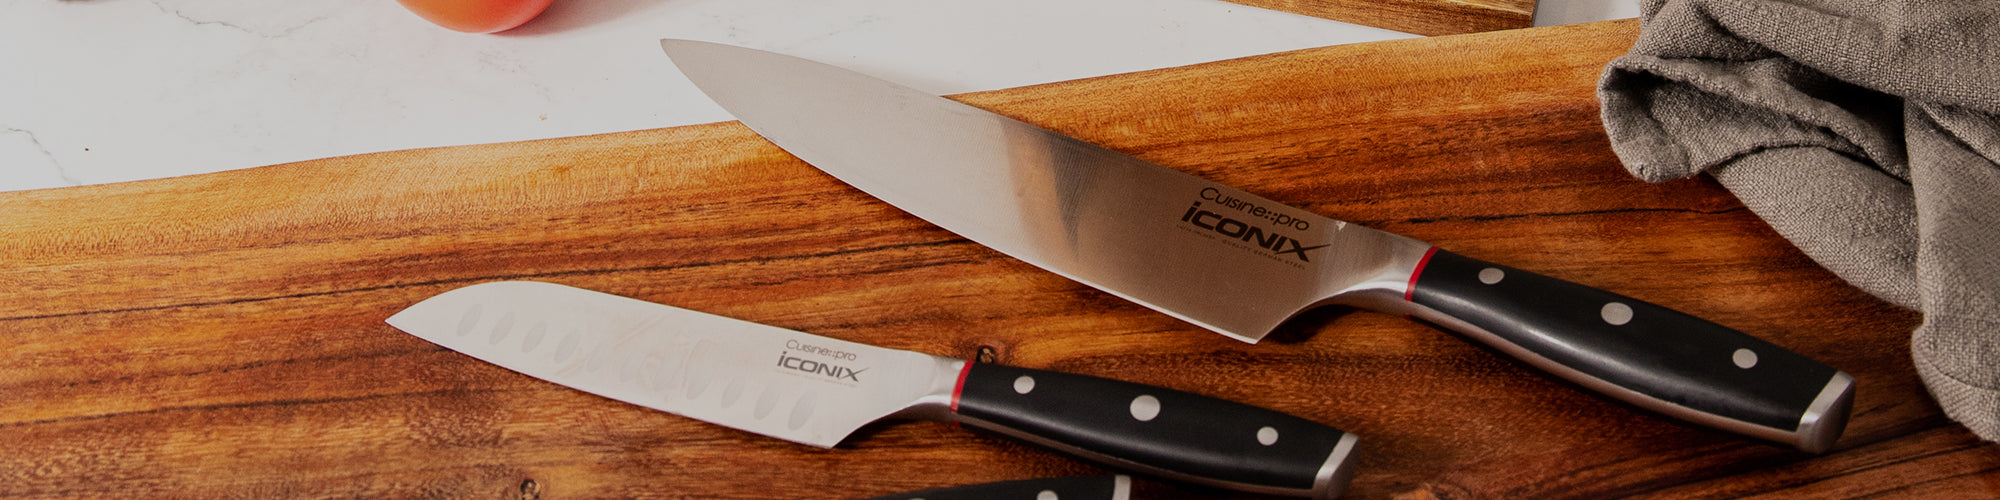 Kitchen Knives-THE CUSTOM CHEF TM